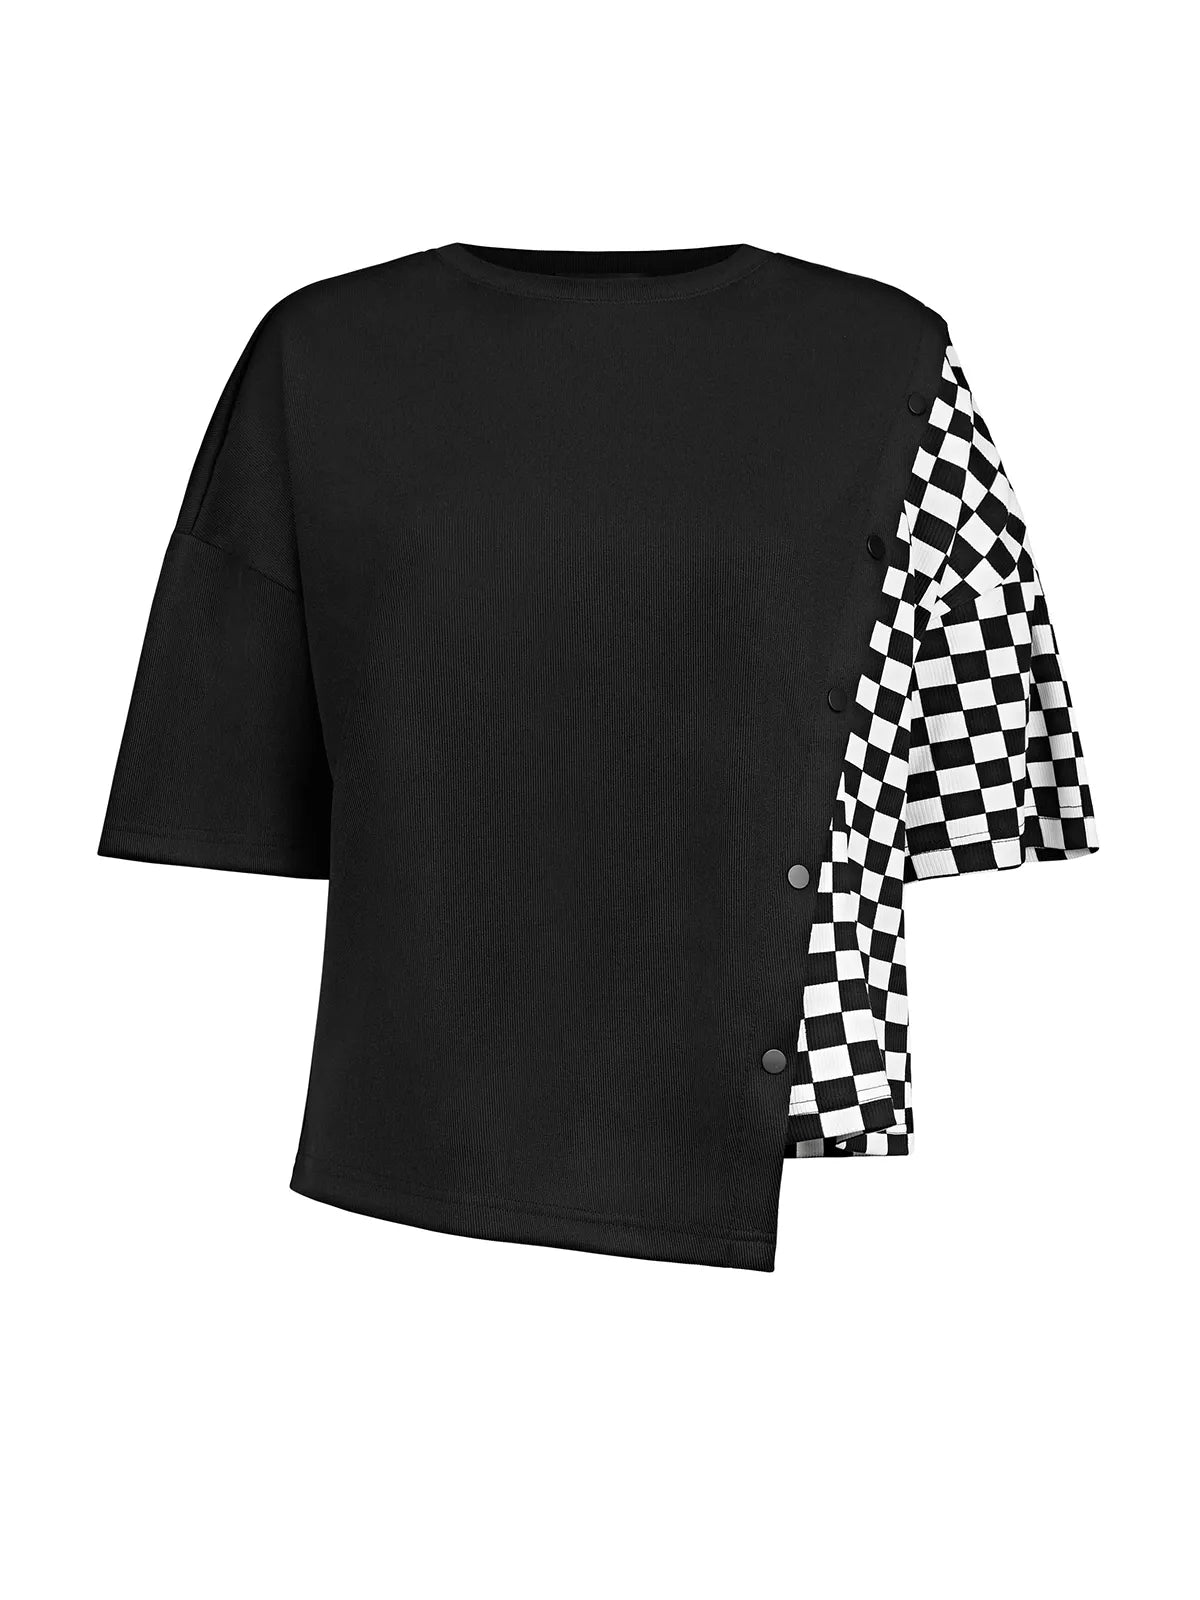 Camiseta irregular con capucha y bloques de color